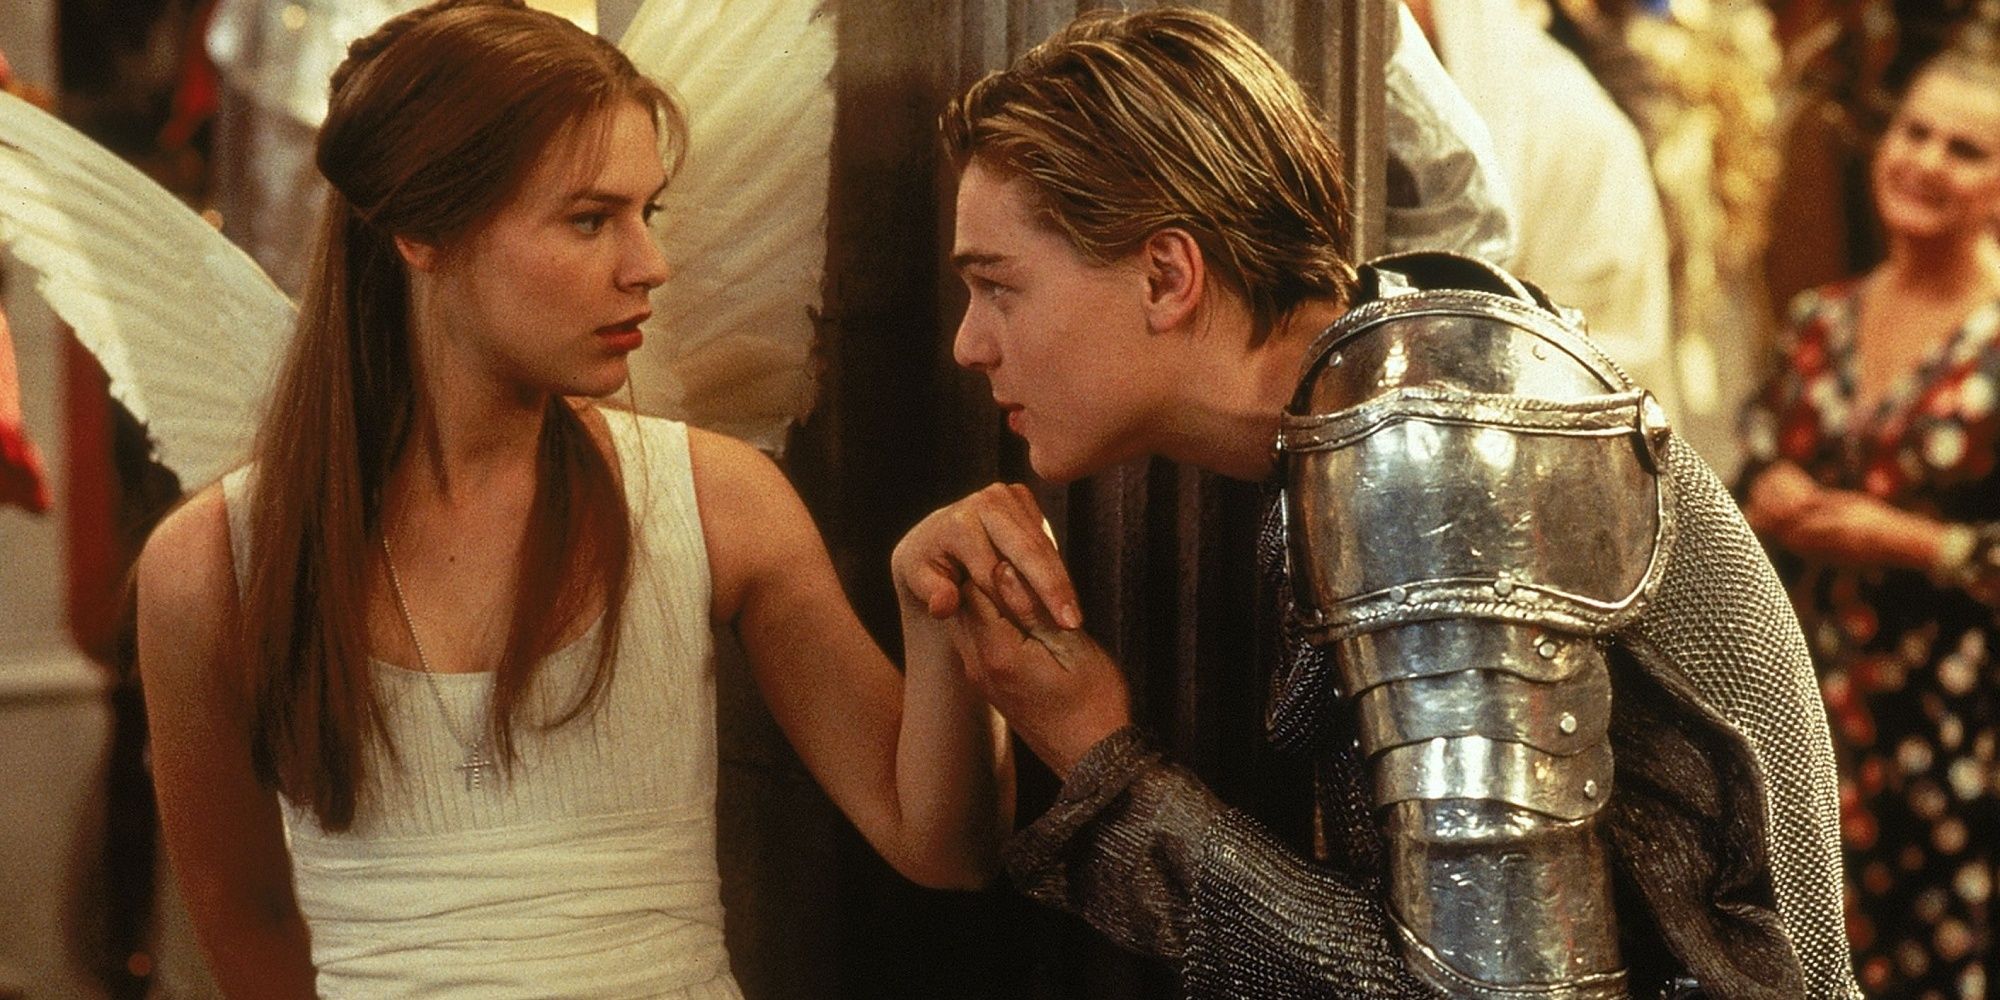 Romeo disfrazado de caballero besando la mano de Julieta, que está disfrazada de ángel.